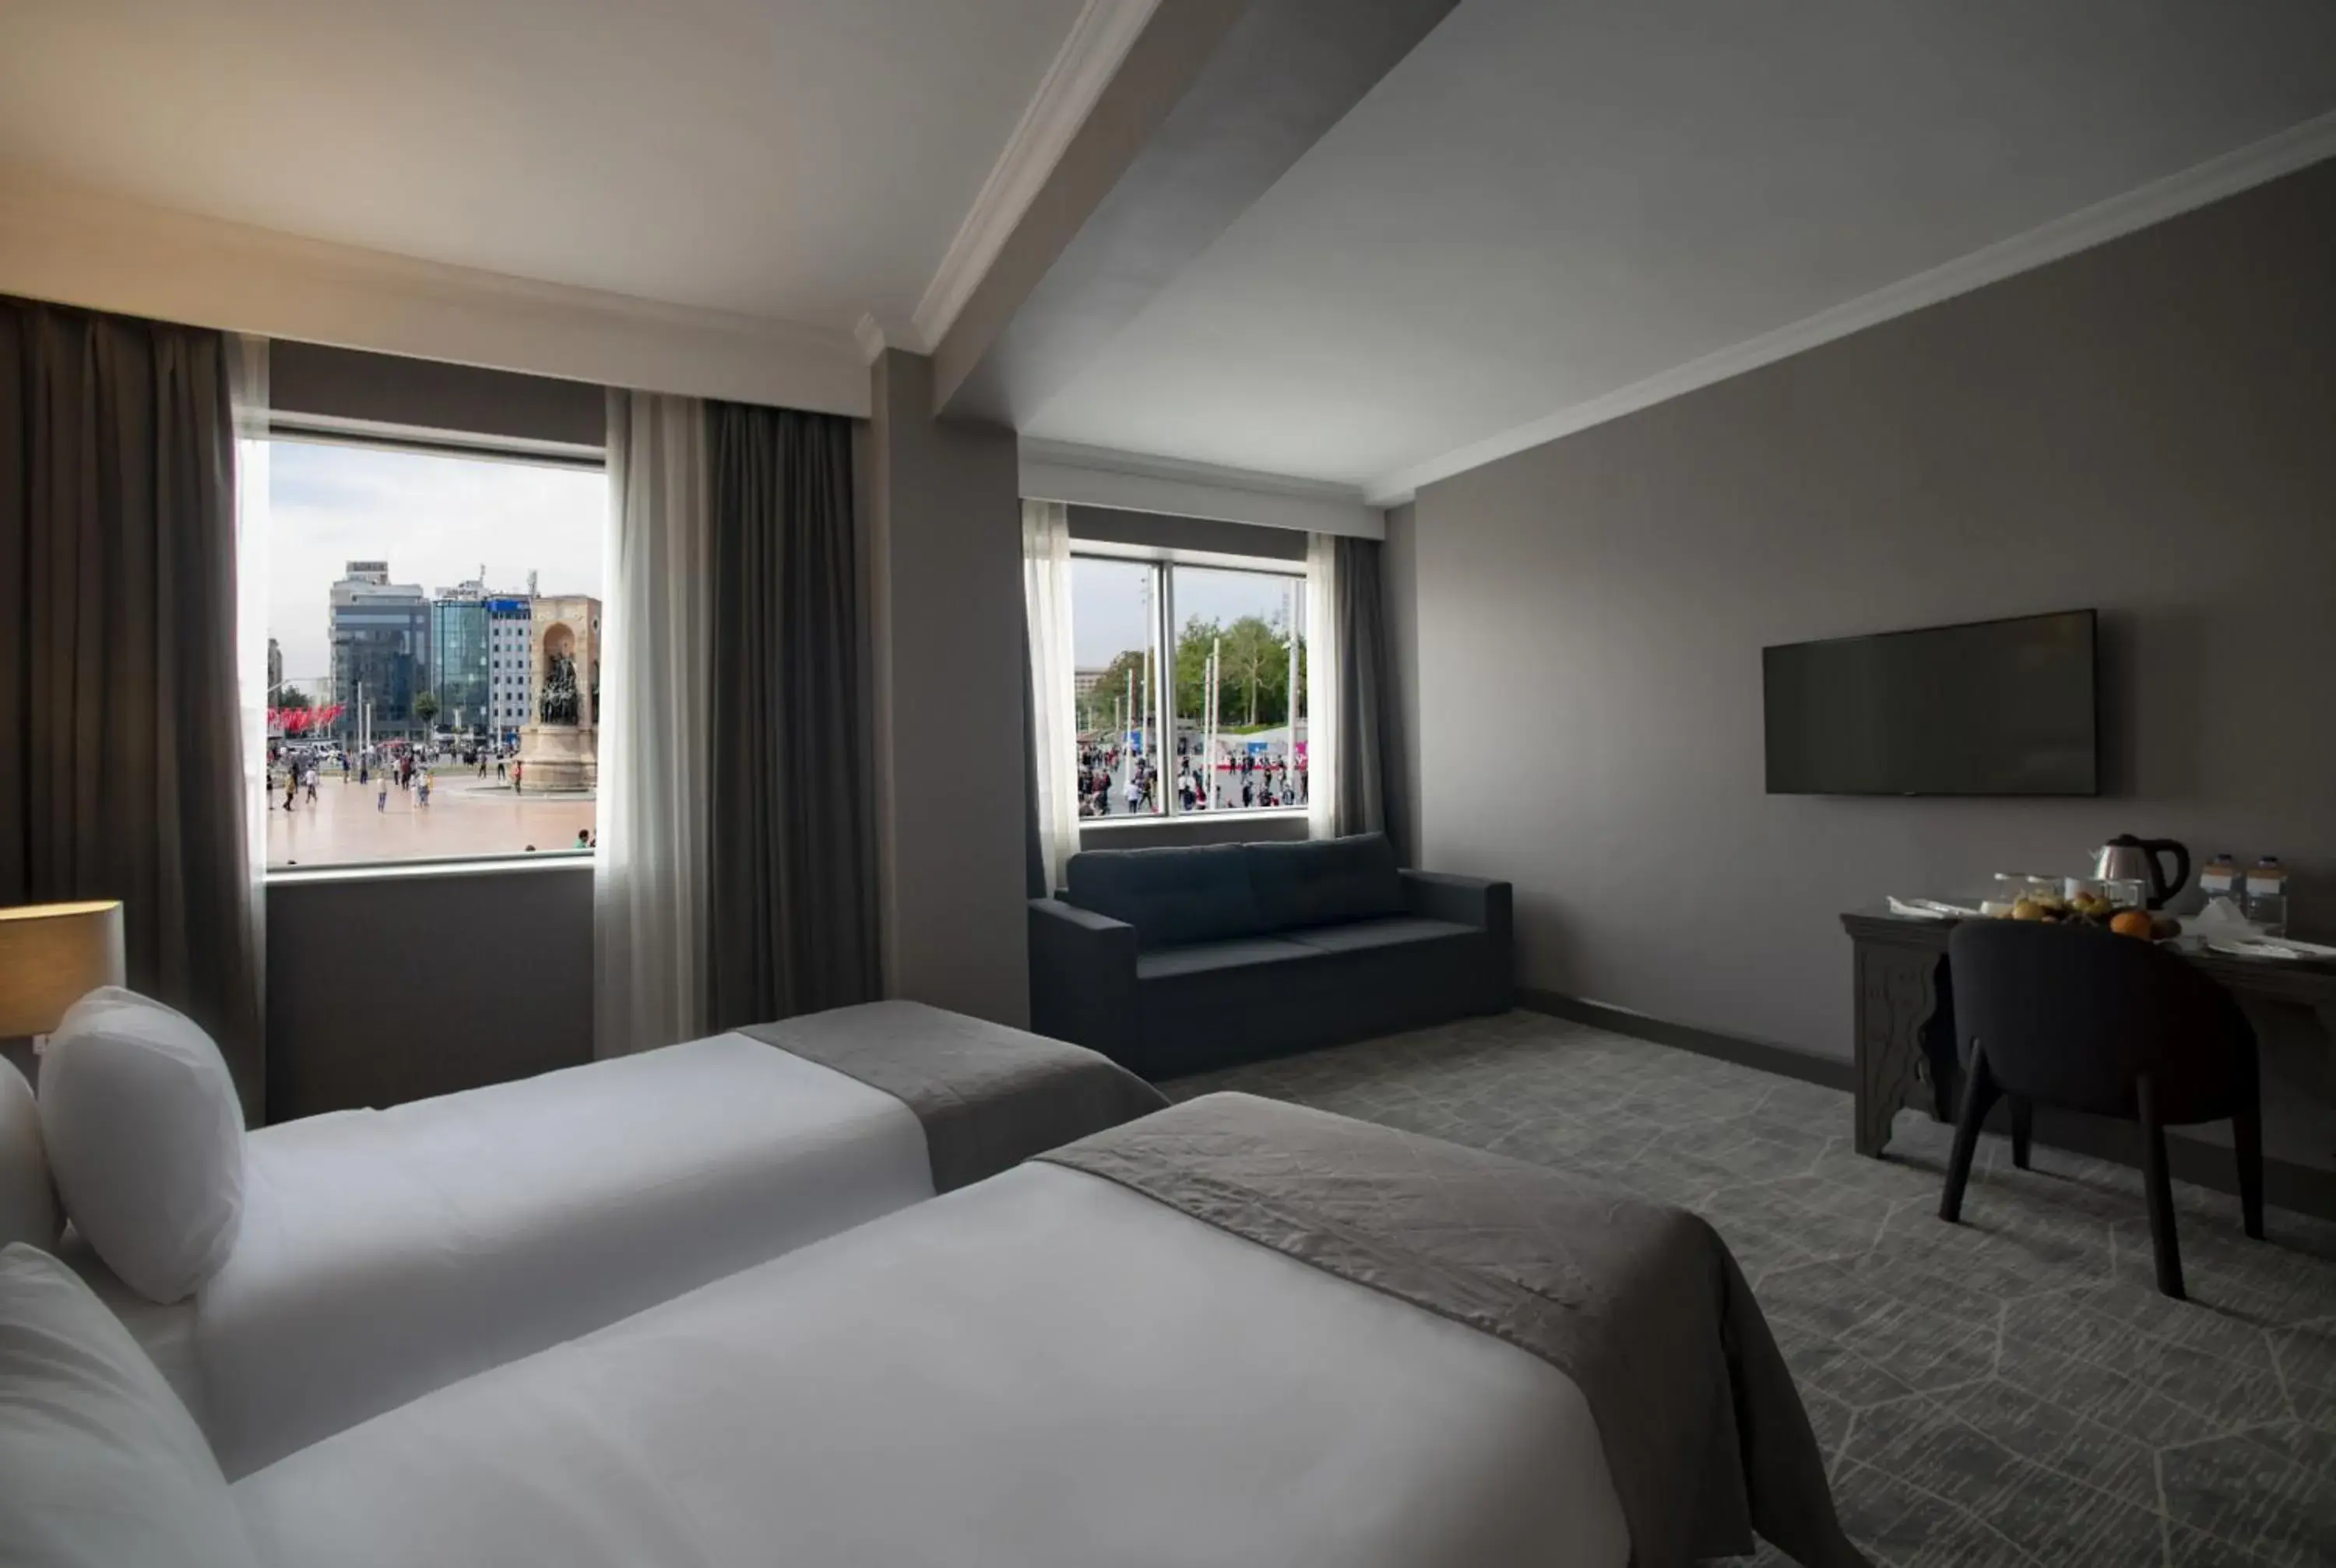 Bedroom in Taksim Square Hotel